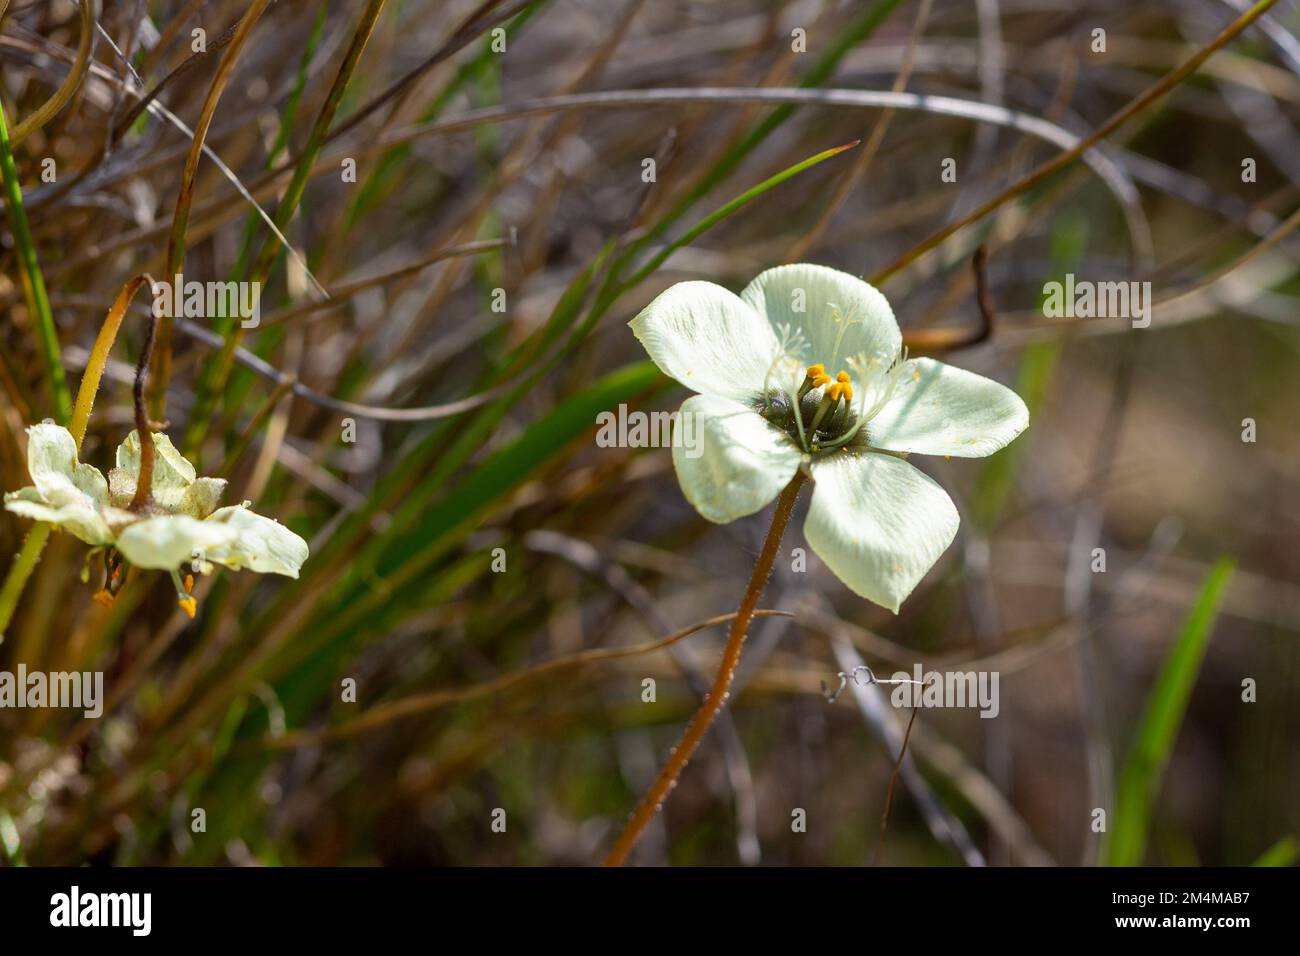 Fleurs sauvages d'Afrique du Sud : Drosera atrostyla, une plante carnivore endémique, dans un habitat naturel au sud de Citrusdal, dans le Cap occidental de l'Afrique du Sud Banque D'Images